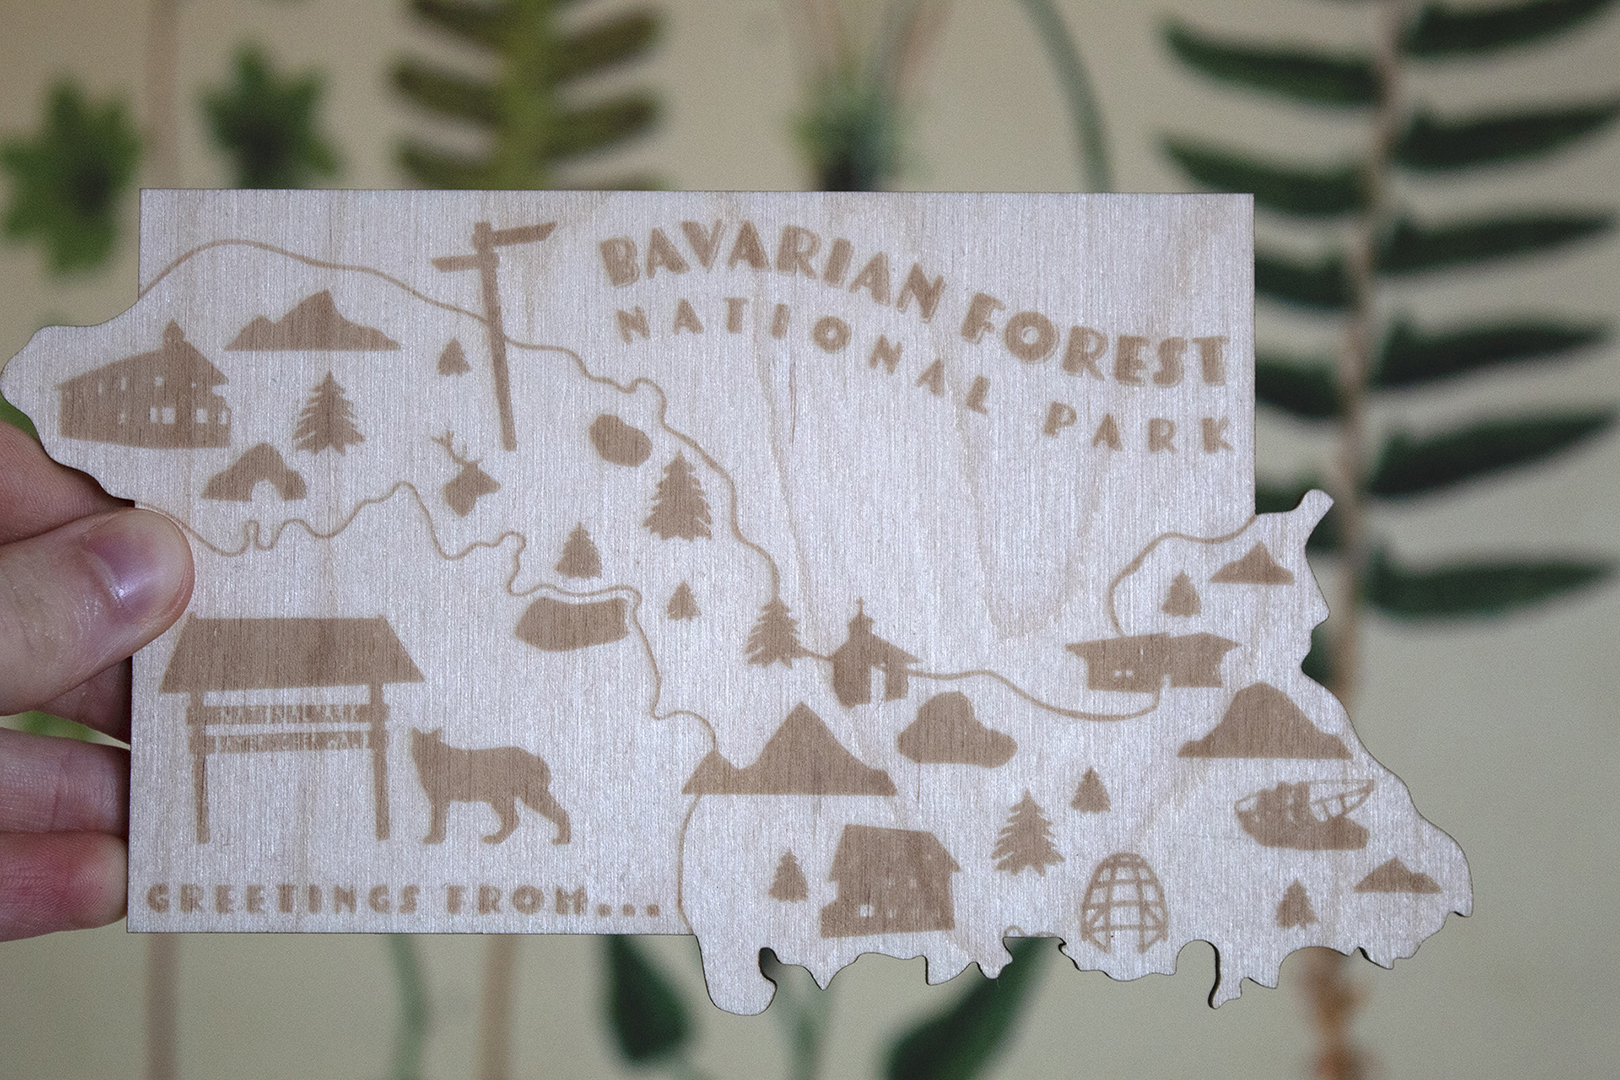 A wooden postcard, designed for Bavarian Forest National Park.